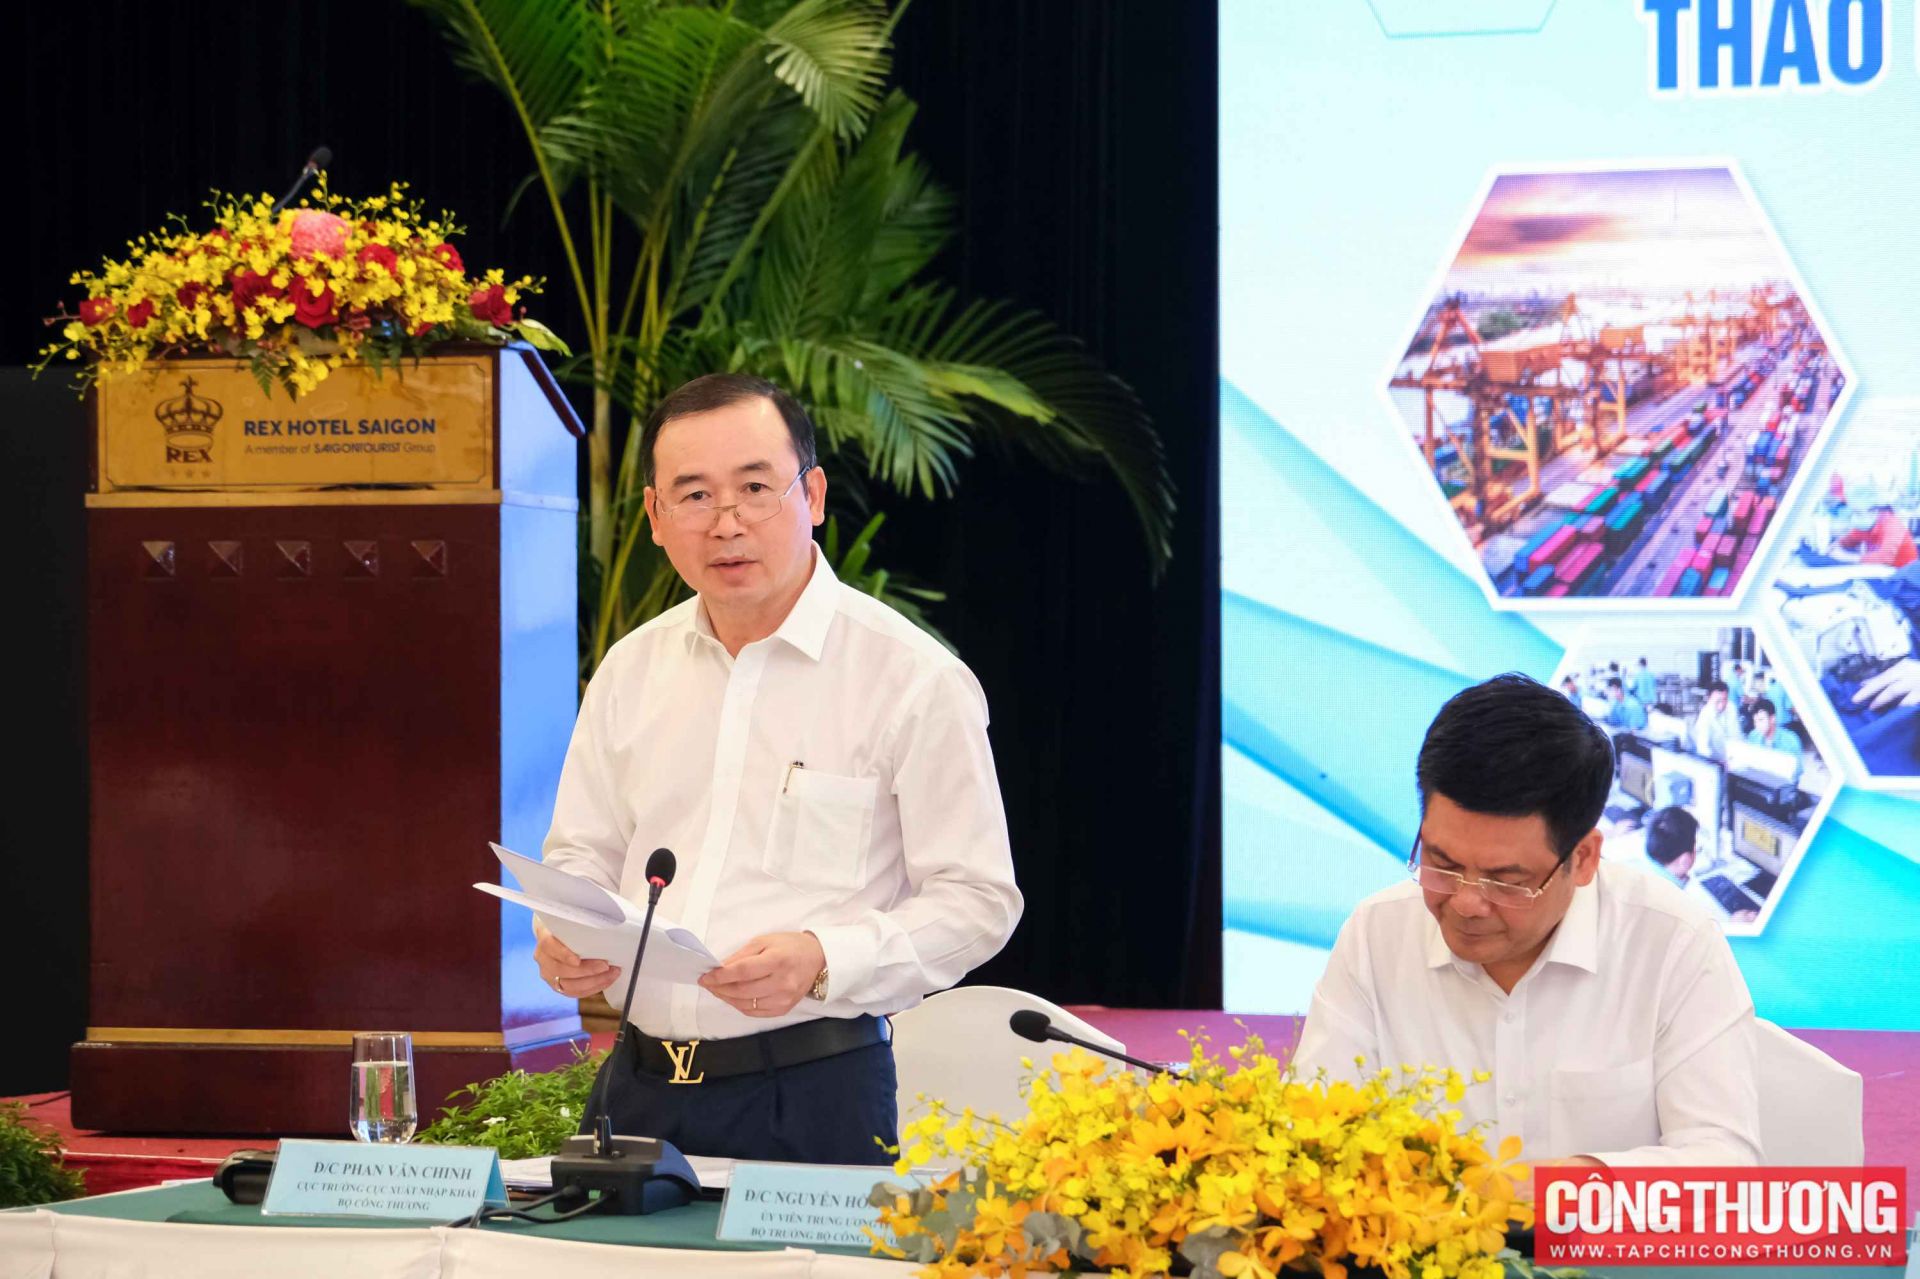 Cục trưởng Cục Xuất nhập khẩu Phan Văn Chinh trình bày báo cáo dẫn đề Hội nghị “Tháo gỡ khó khăn trong sản xuất kinh doanh và đẩy mạnh xuất khẩu”